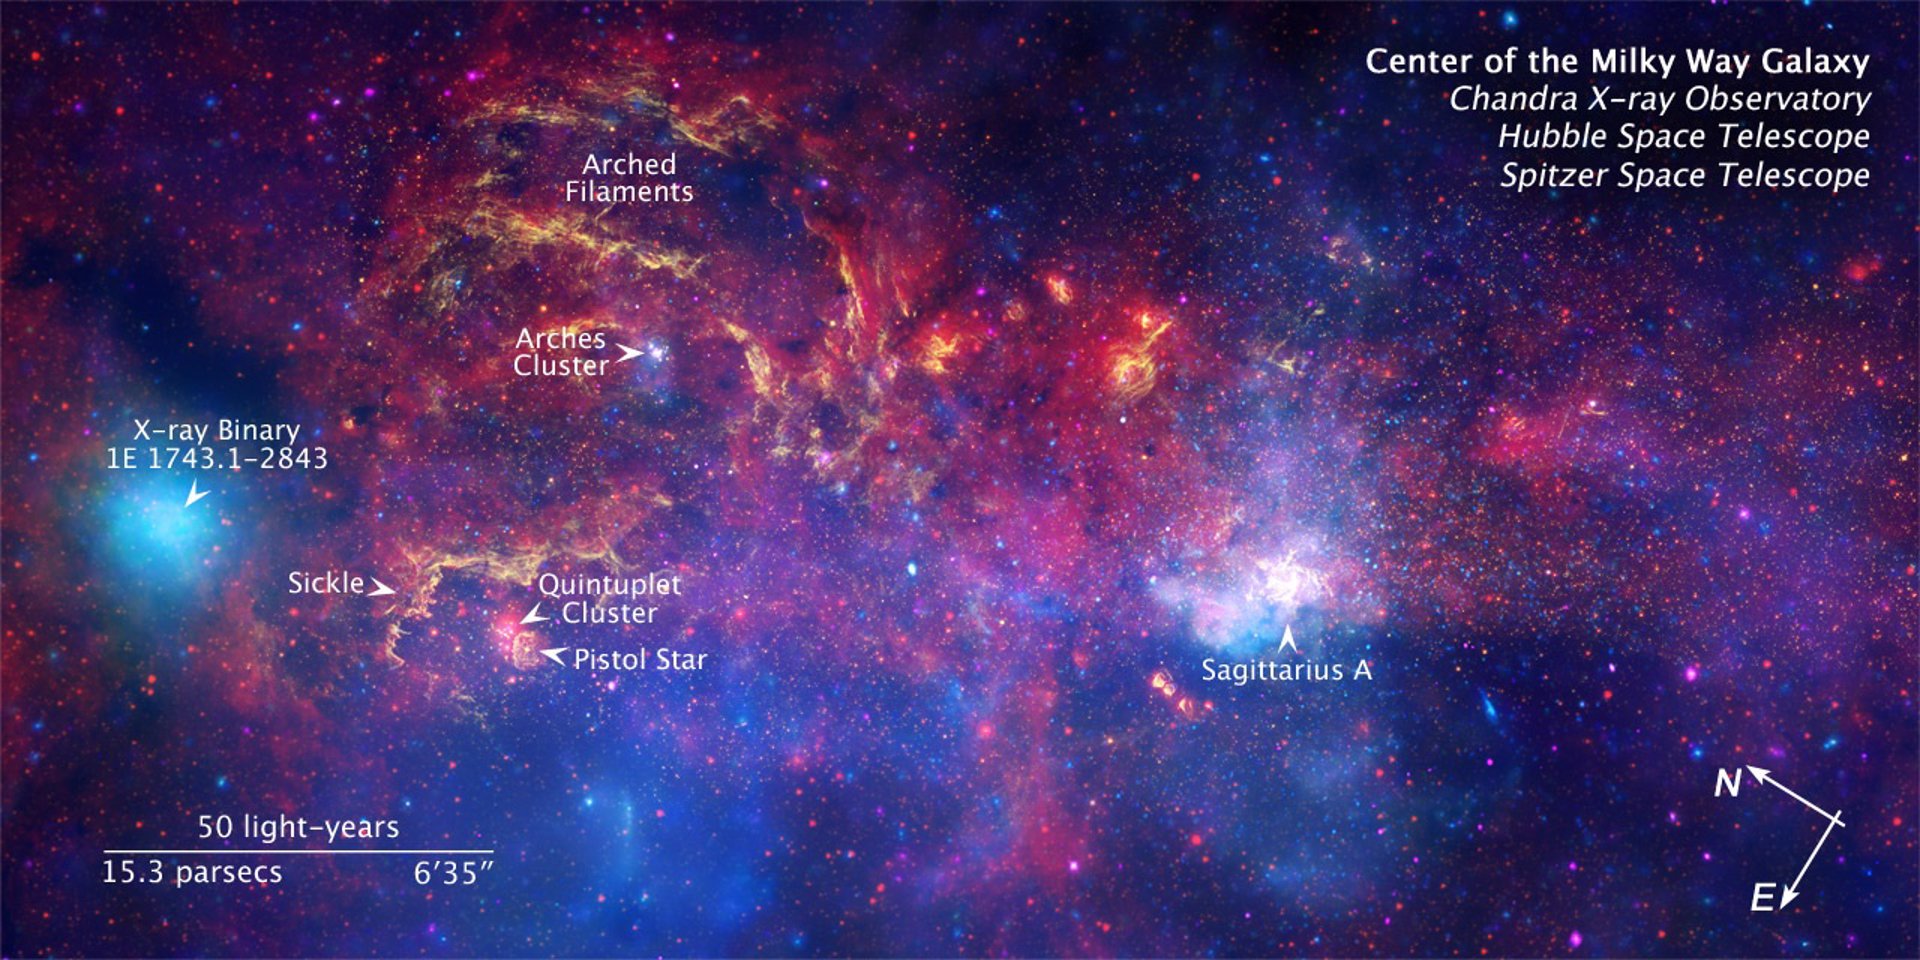 Vislumbran la estructura del agujero negro supermasivo del centro de la galaxia